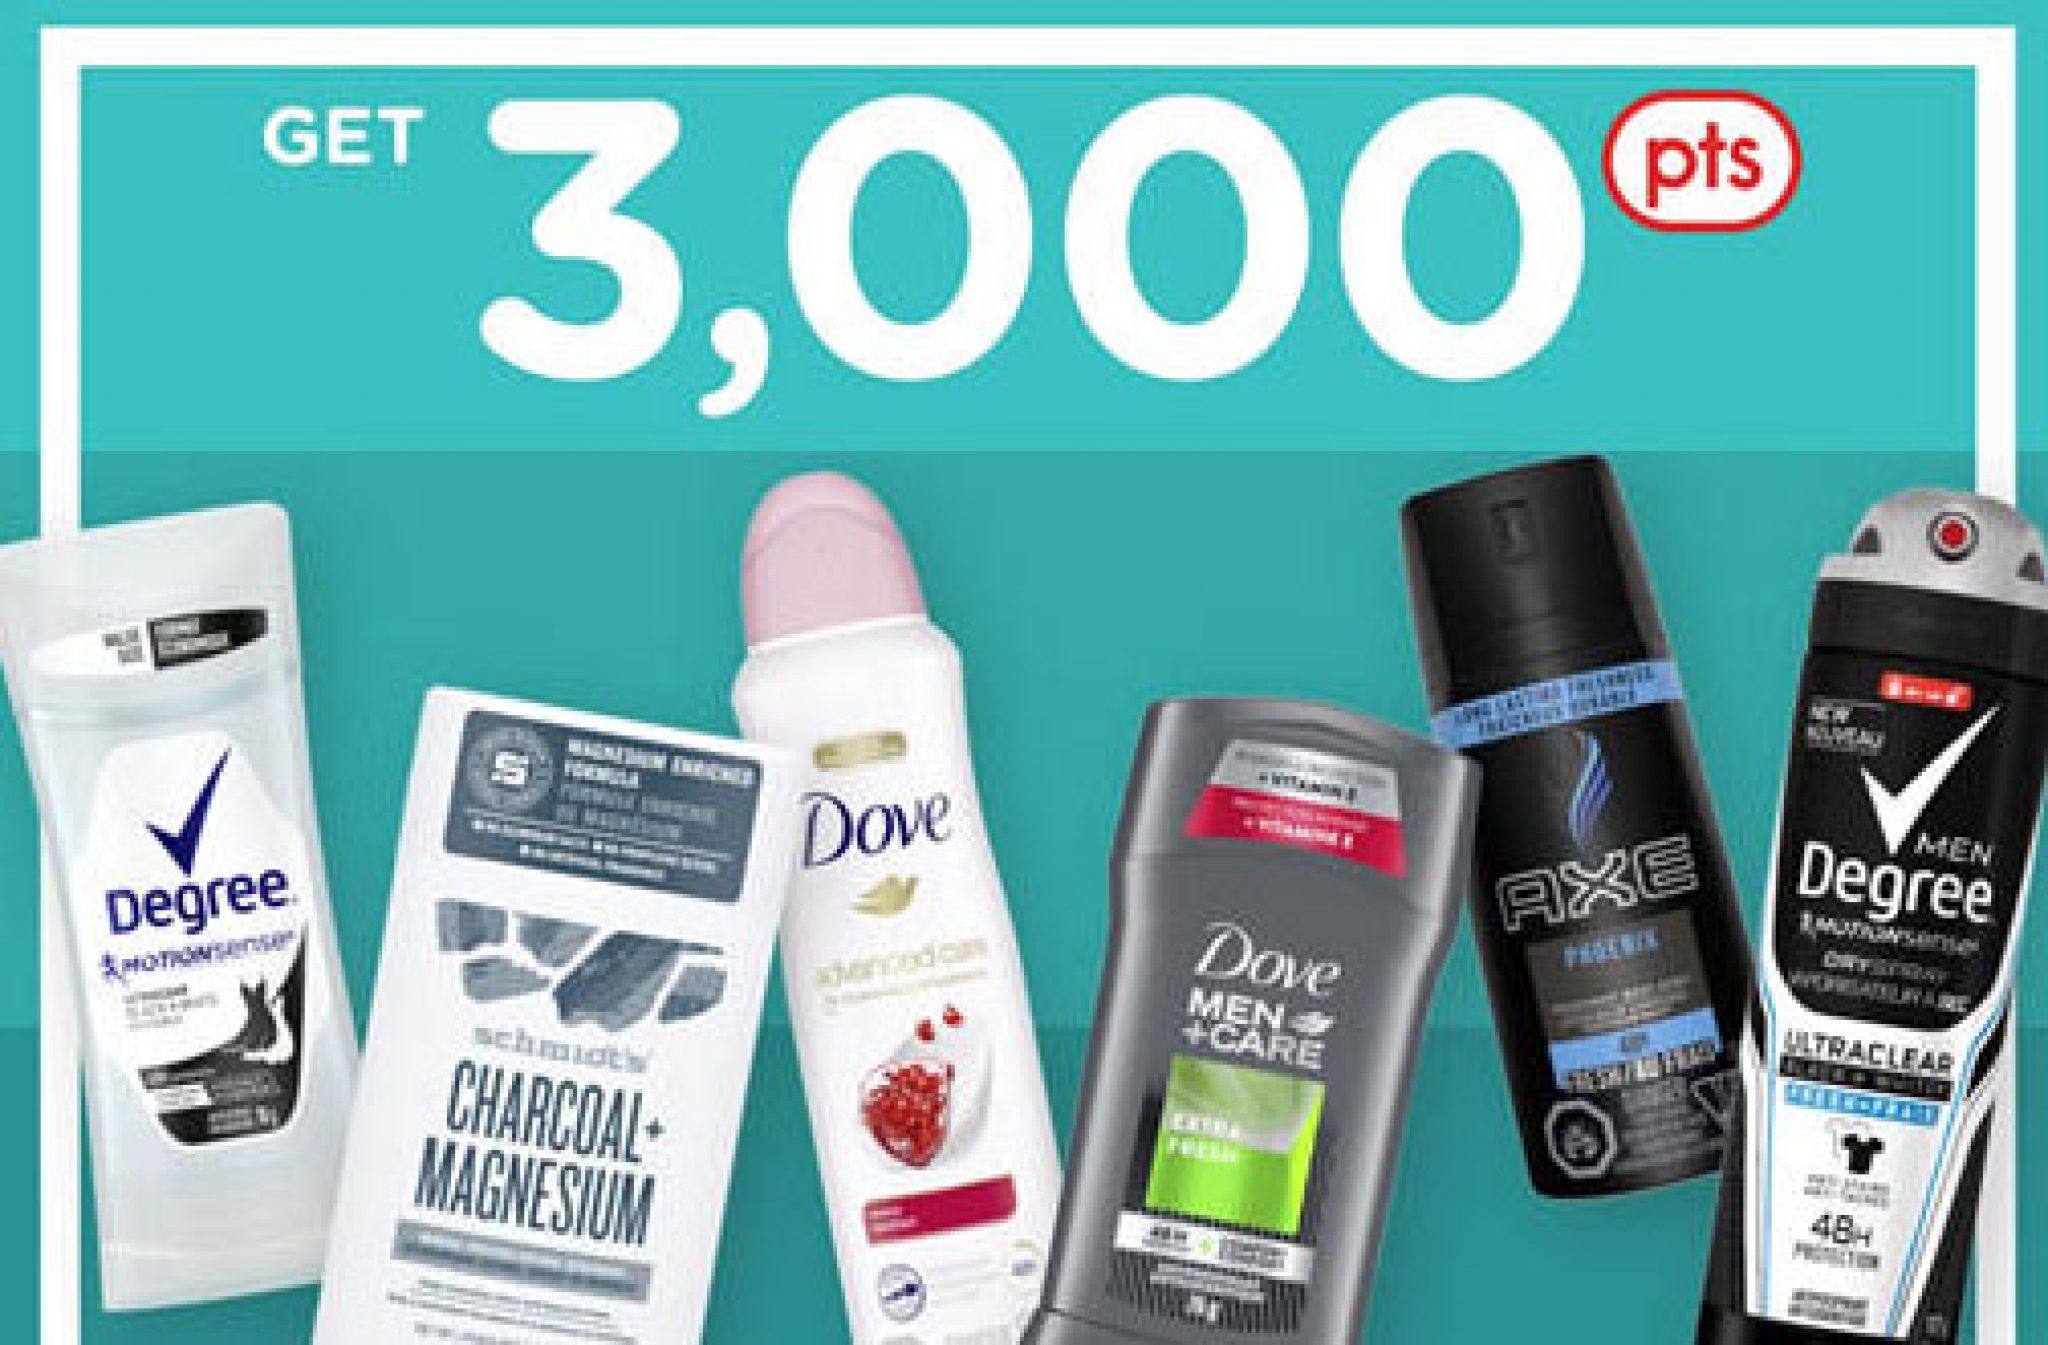 Unilever Deodorant PC Optimum Offer Deals from SaveaLoonie